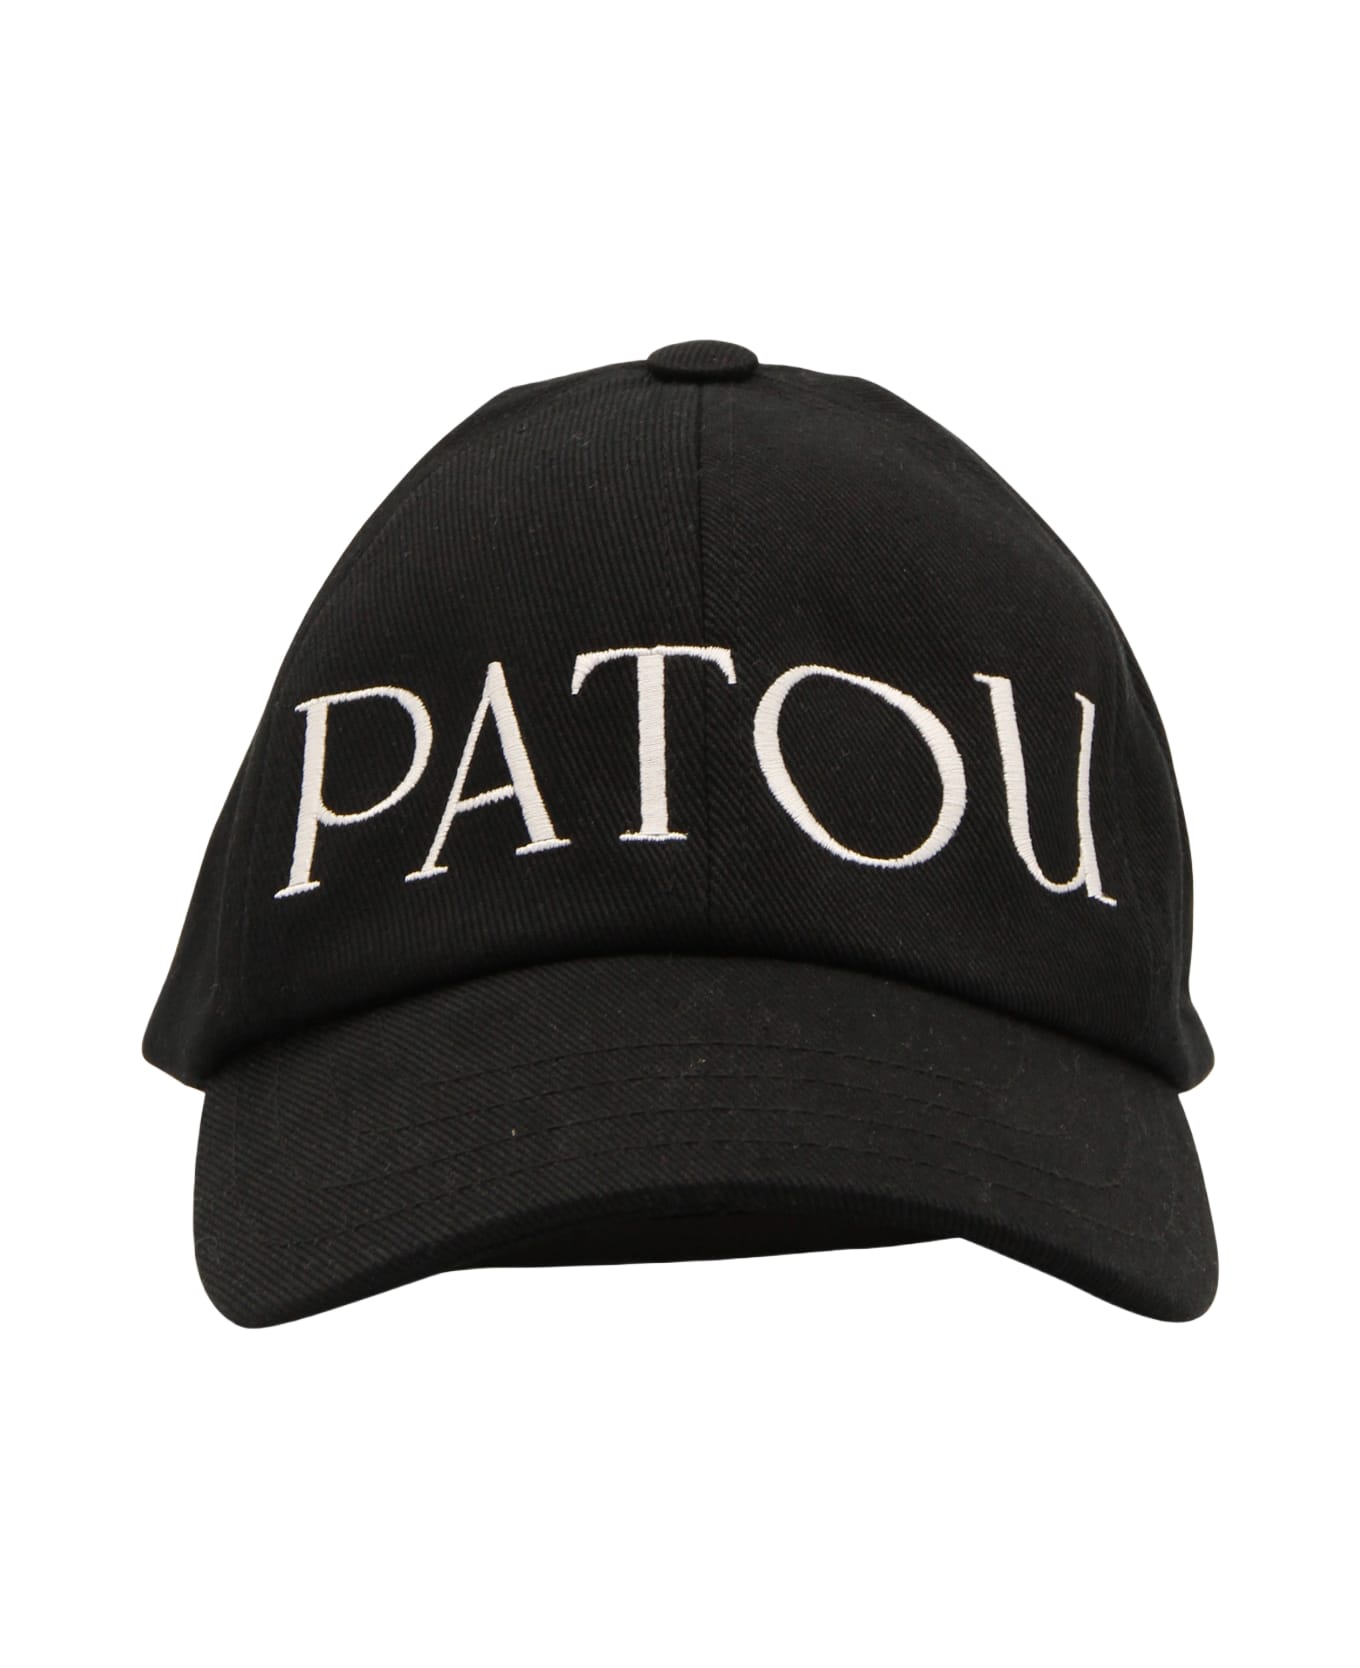 Patou Black And White Cotton Baseball Cap - 999B